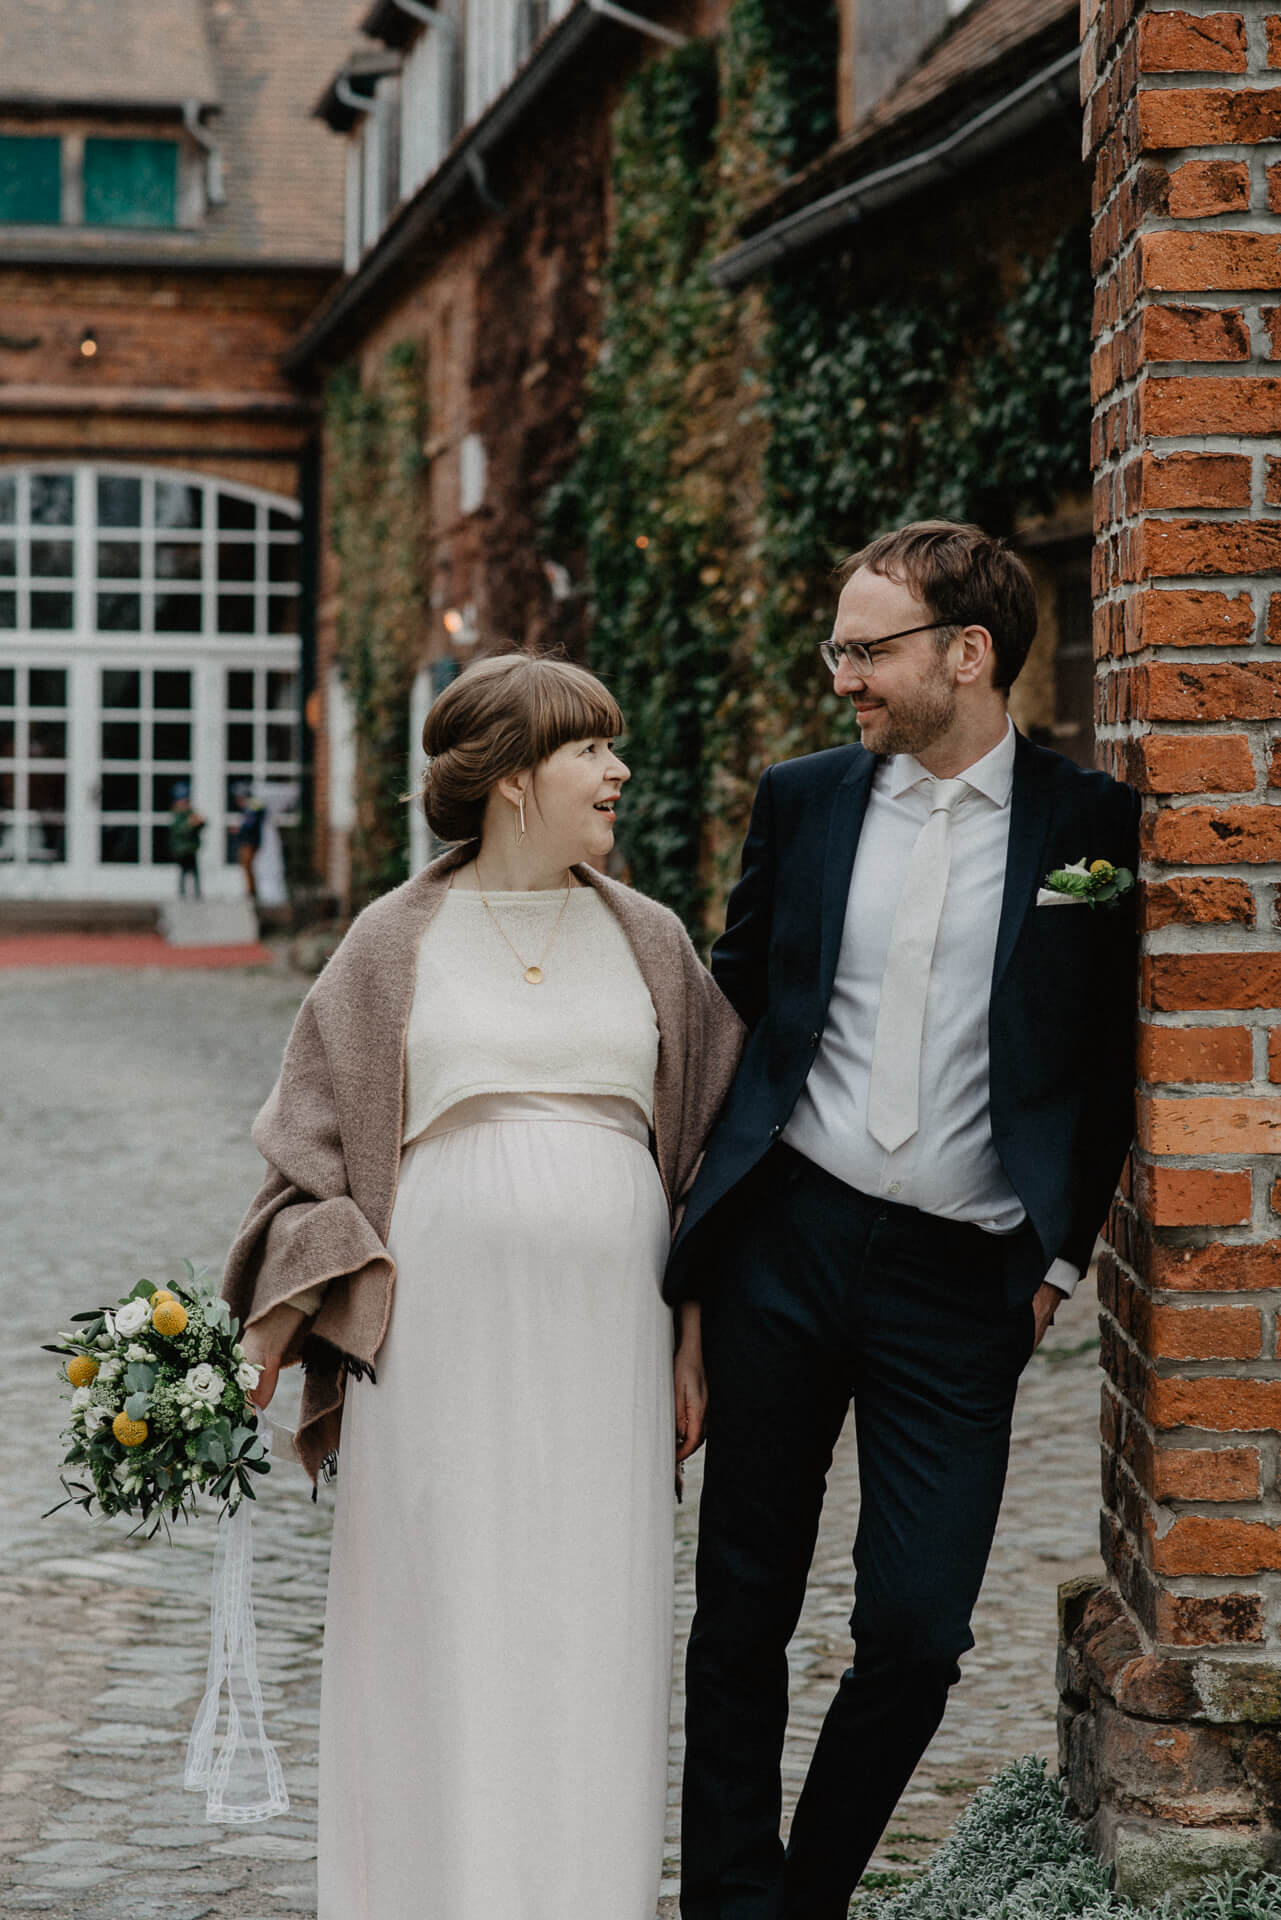 zweinander Hochzeitsfotos Propstei Leipzig von Luise und Chris